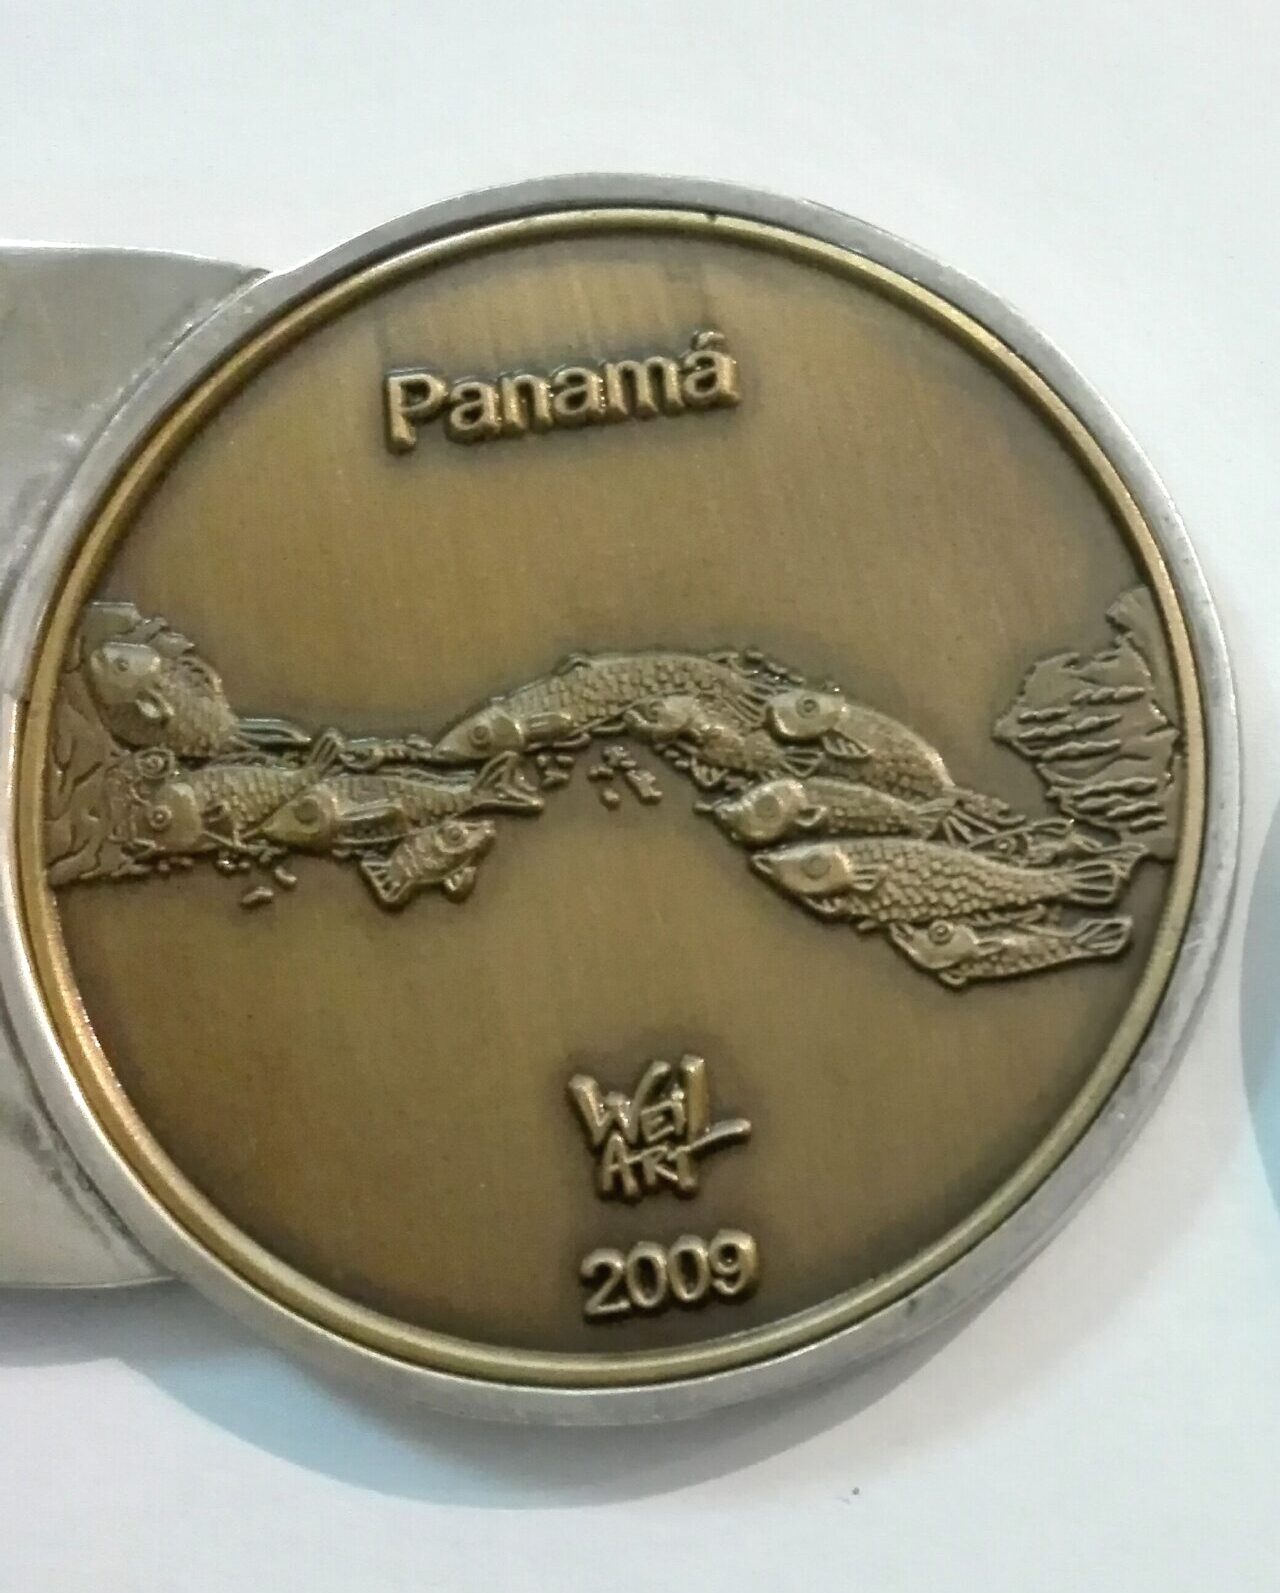 Panama, abundancia de peces en forma de mapa de Panama - El beso de los oceanos inspirado en la version de Holland de 1910 para la exposicion Panama Pacific en San Frrancisco, California en 1915.